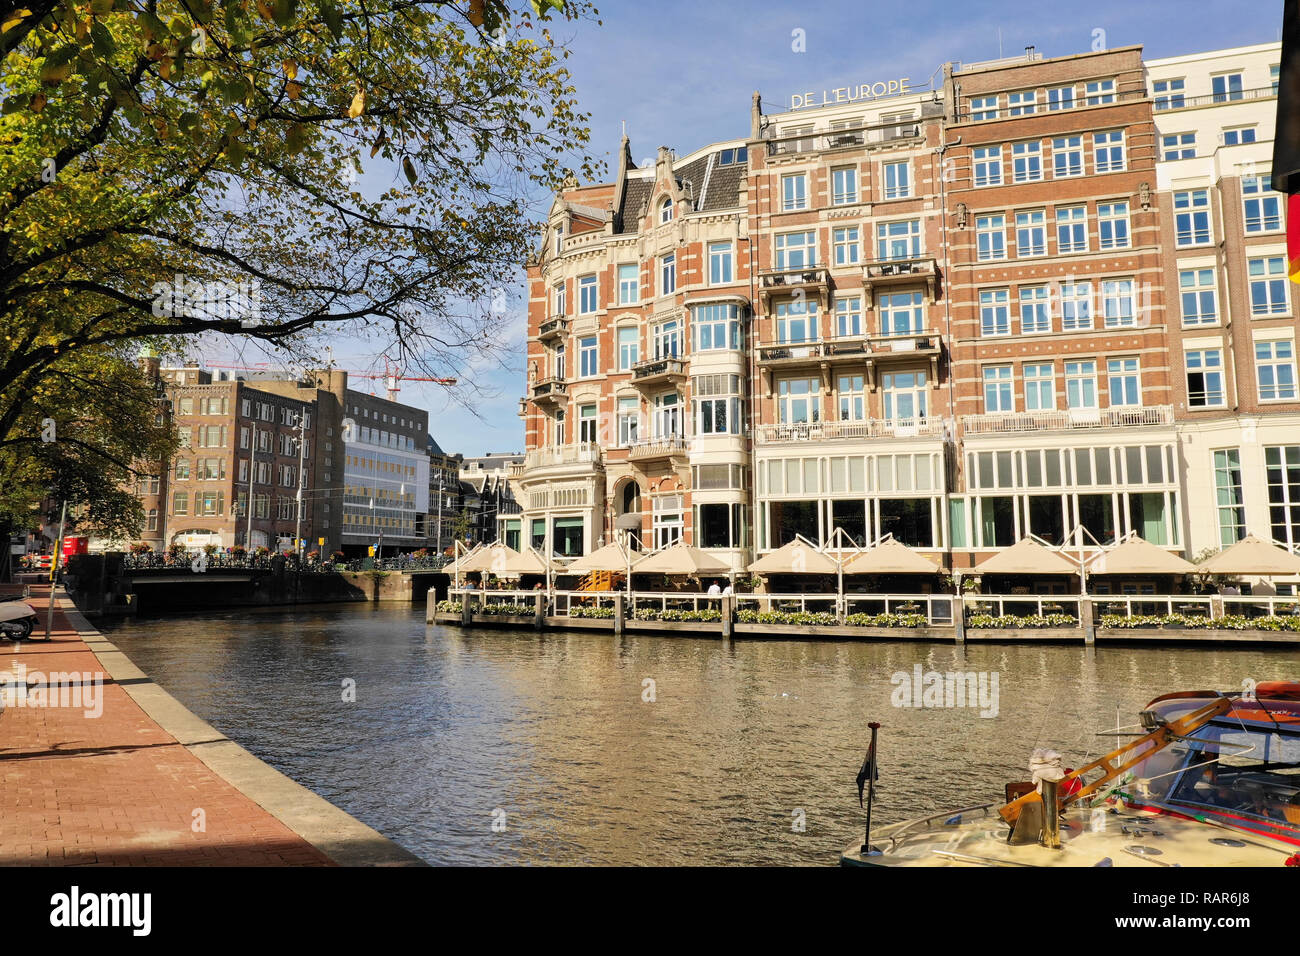 Uno dei la più bella di edifici di Amsterdam: De L'Europe Amsterdam Hotel, con barche passando sulla Amstel Foto Stock